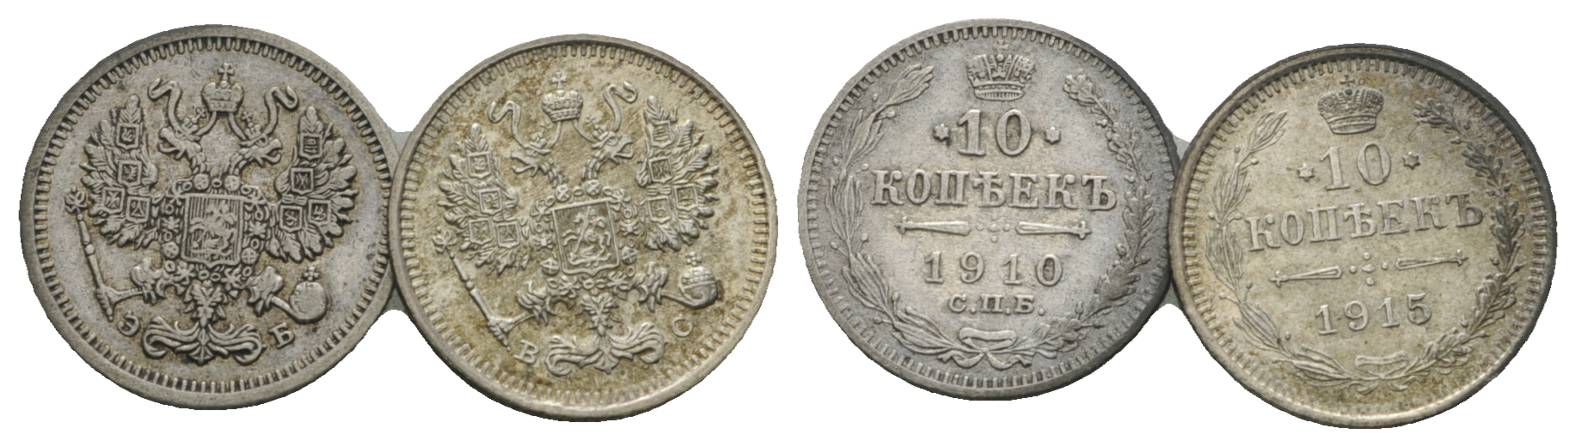  Russland, 2 Kleinmünzen (1910/1915)   